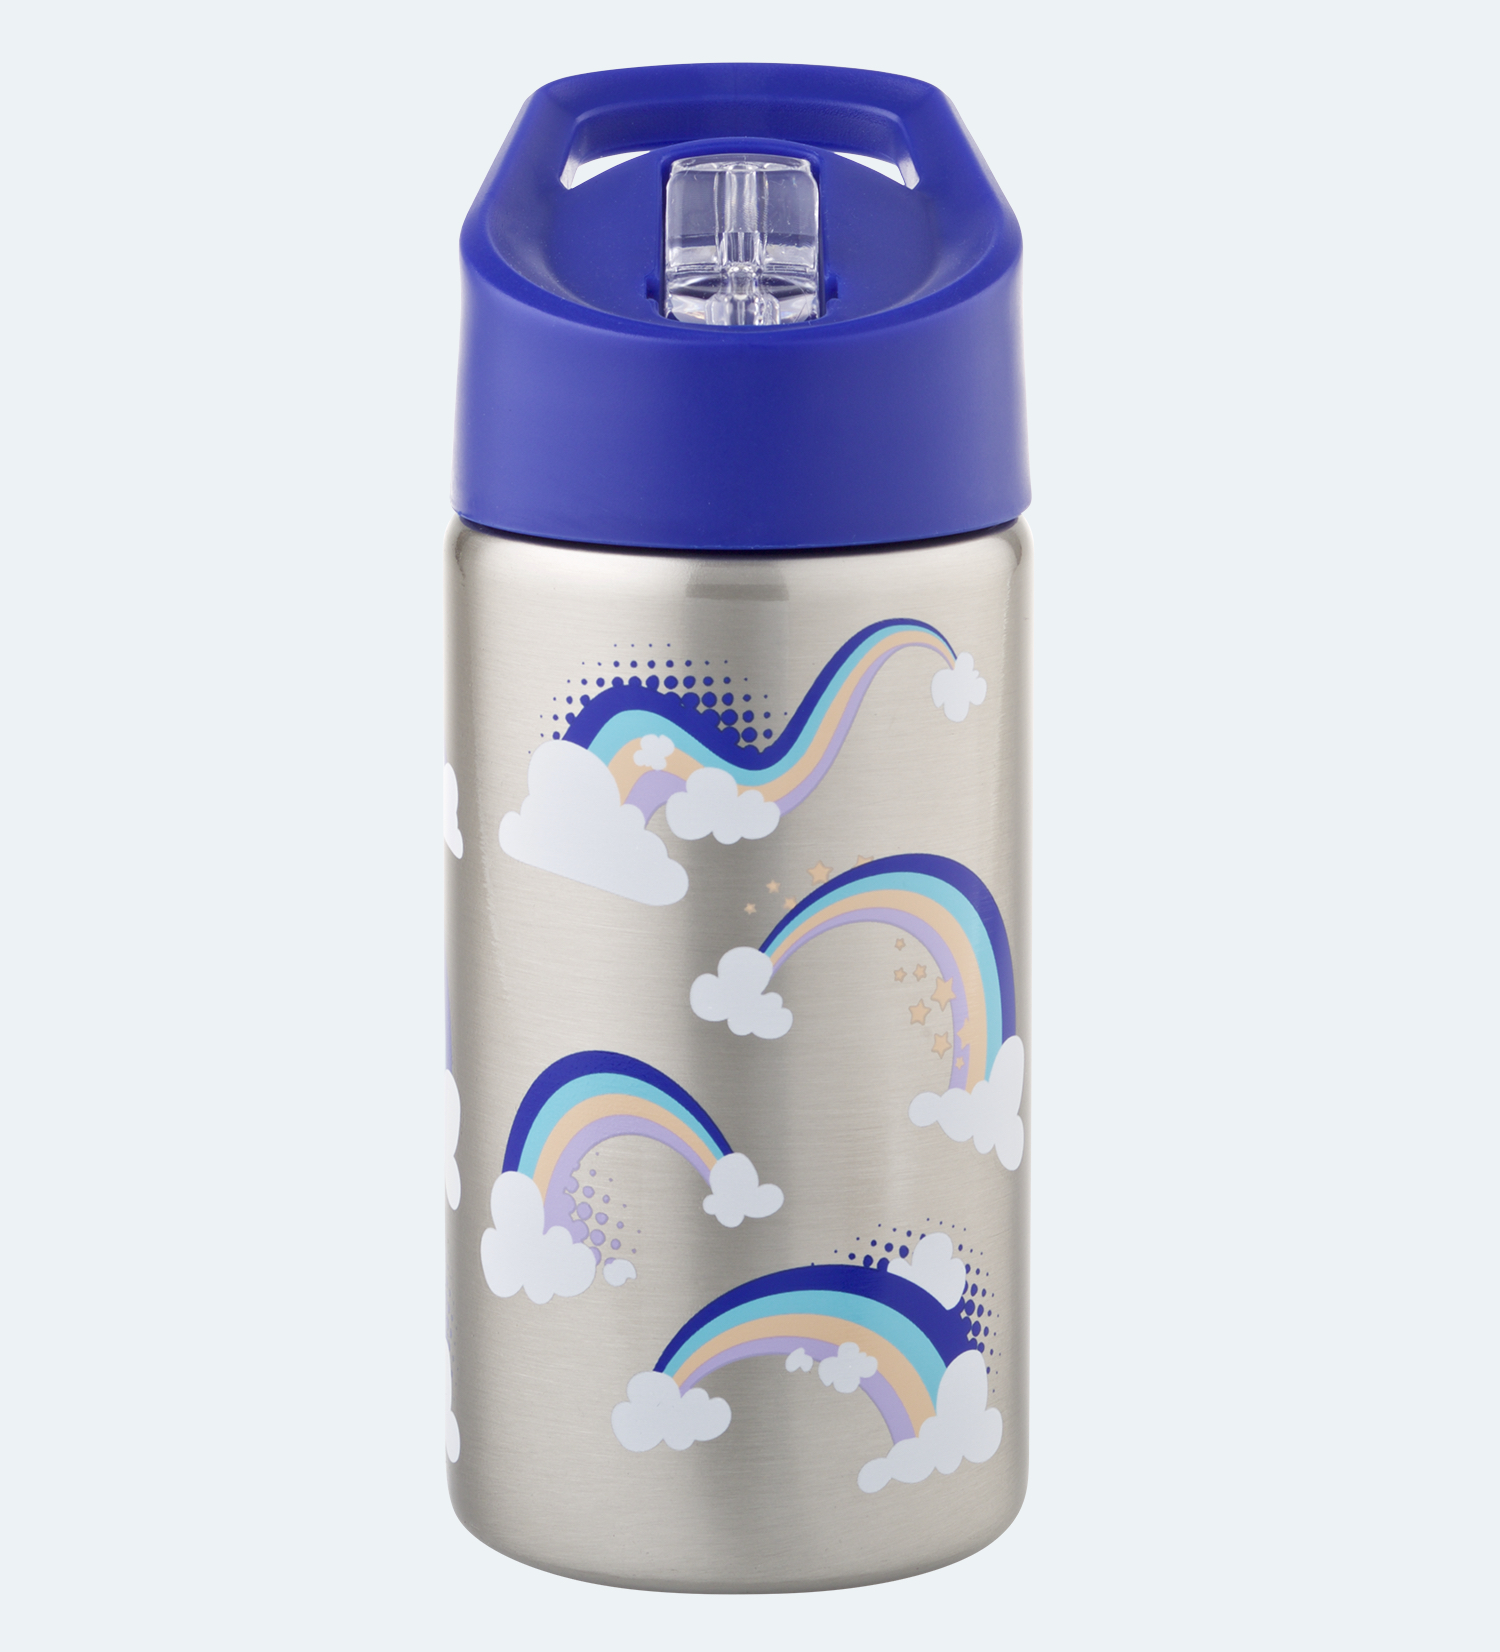 Buy Stainless Steel Princess Kids Sipper Bottle Flask Water Bottle